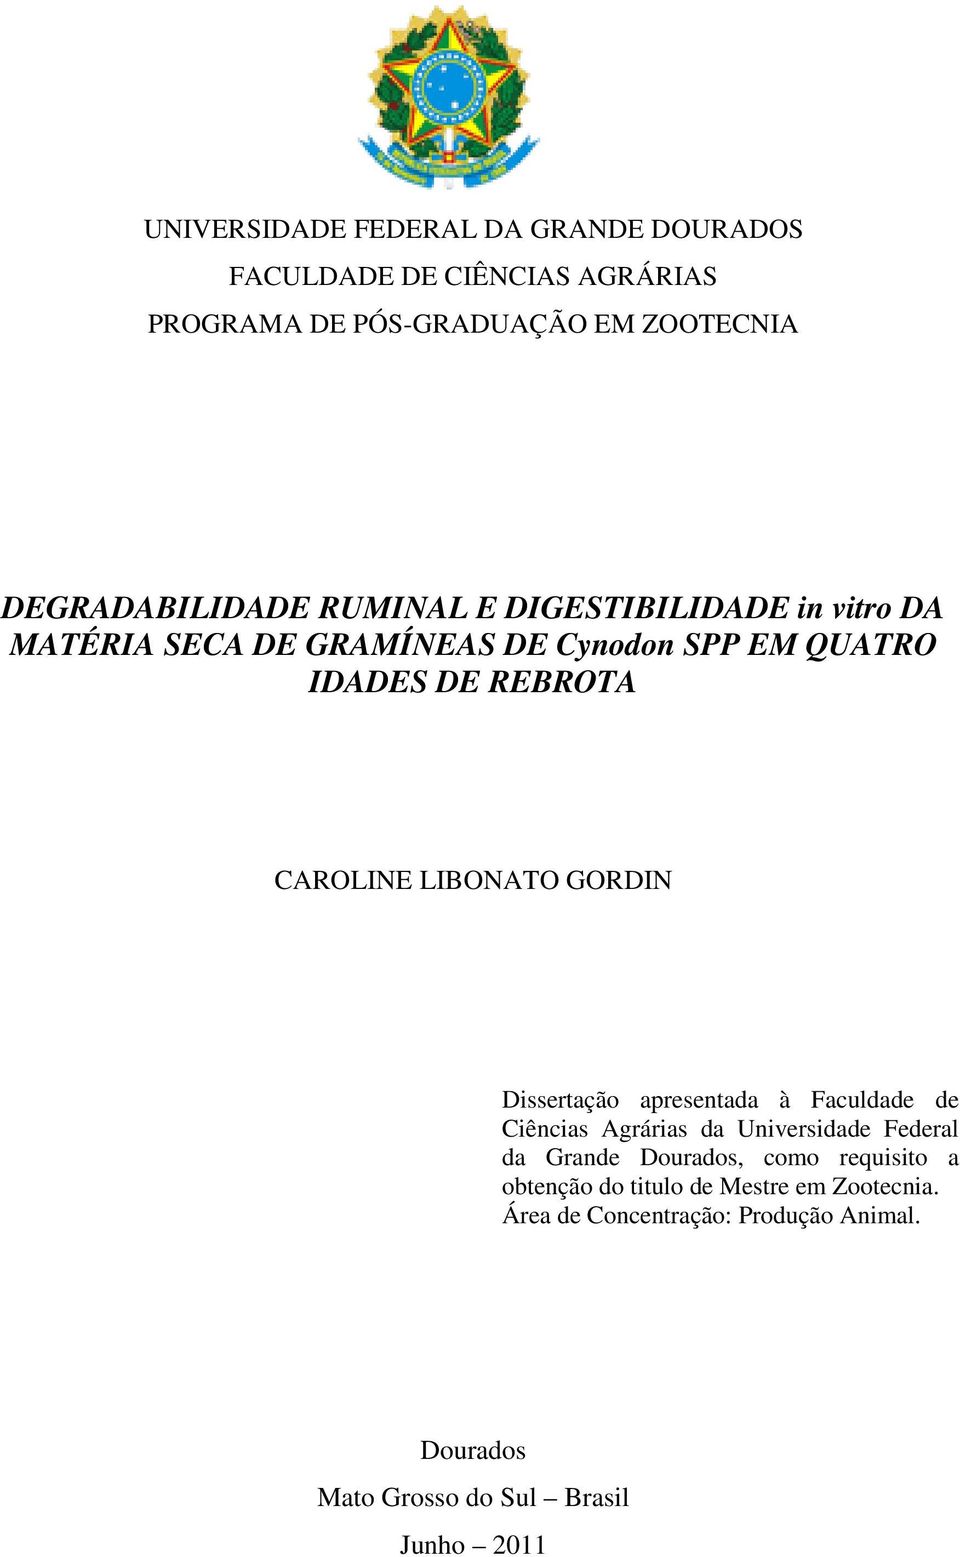 CAROLINE LIBONATO GORDIN Dissertação apresentada à Faculdade de Ciências Agrárias da Universidade Federal da Grande Dourados,